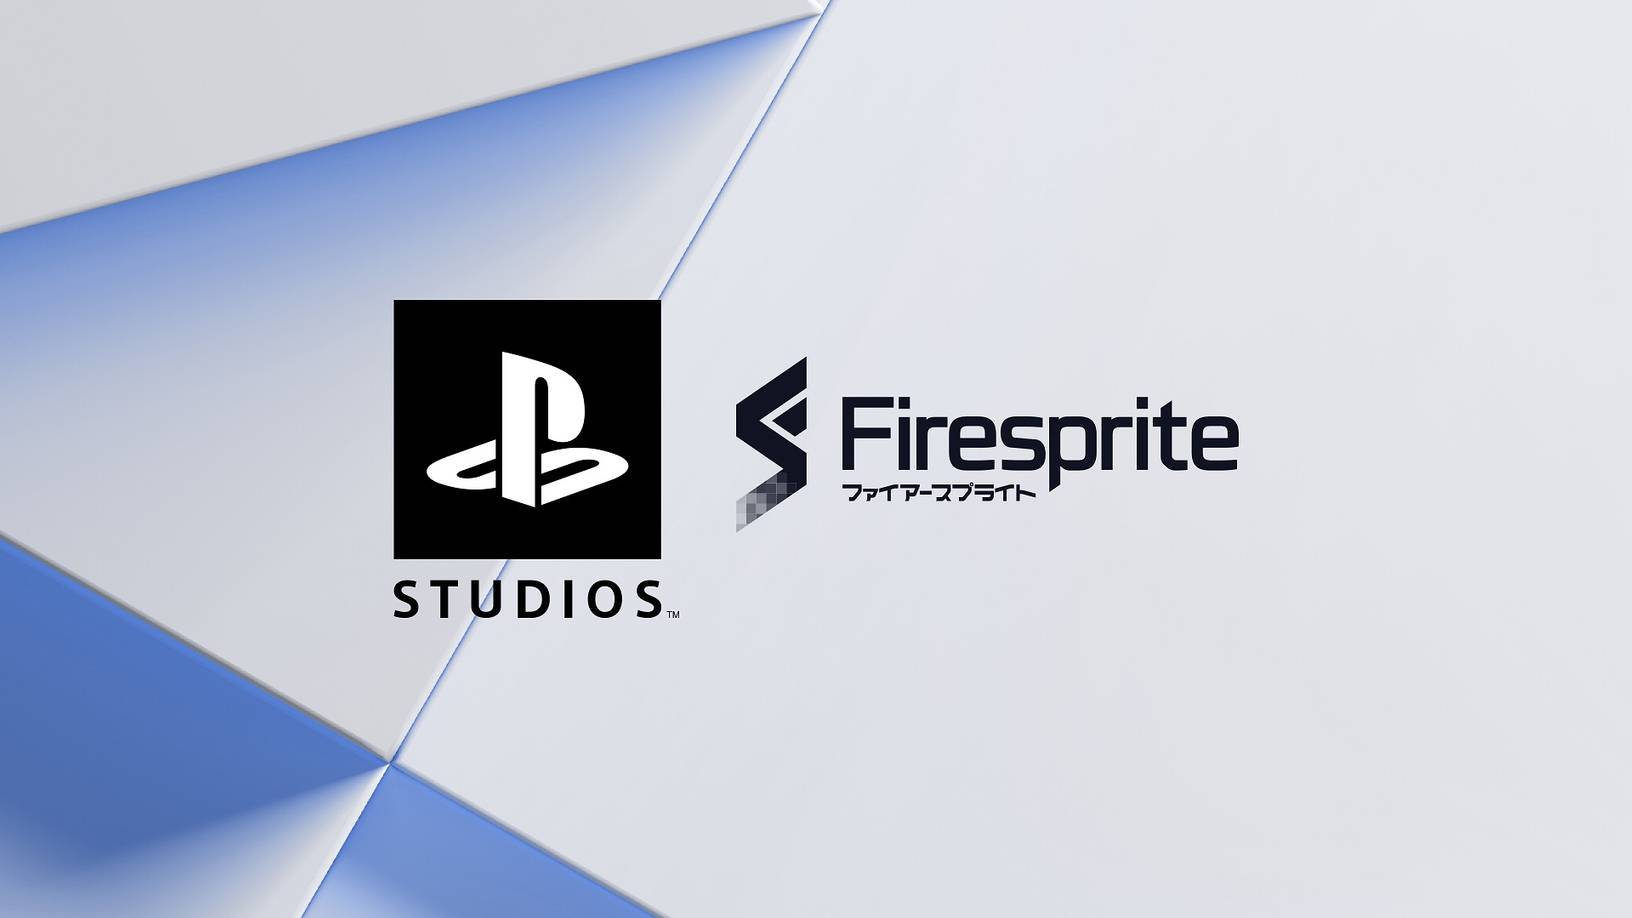 Firesprite e playstation studios anunciam parceria | c2b2ef46 firesprite | married games fabrik games | fabrik games | firesprite e playstation studios